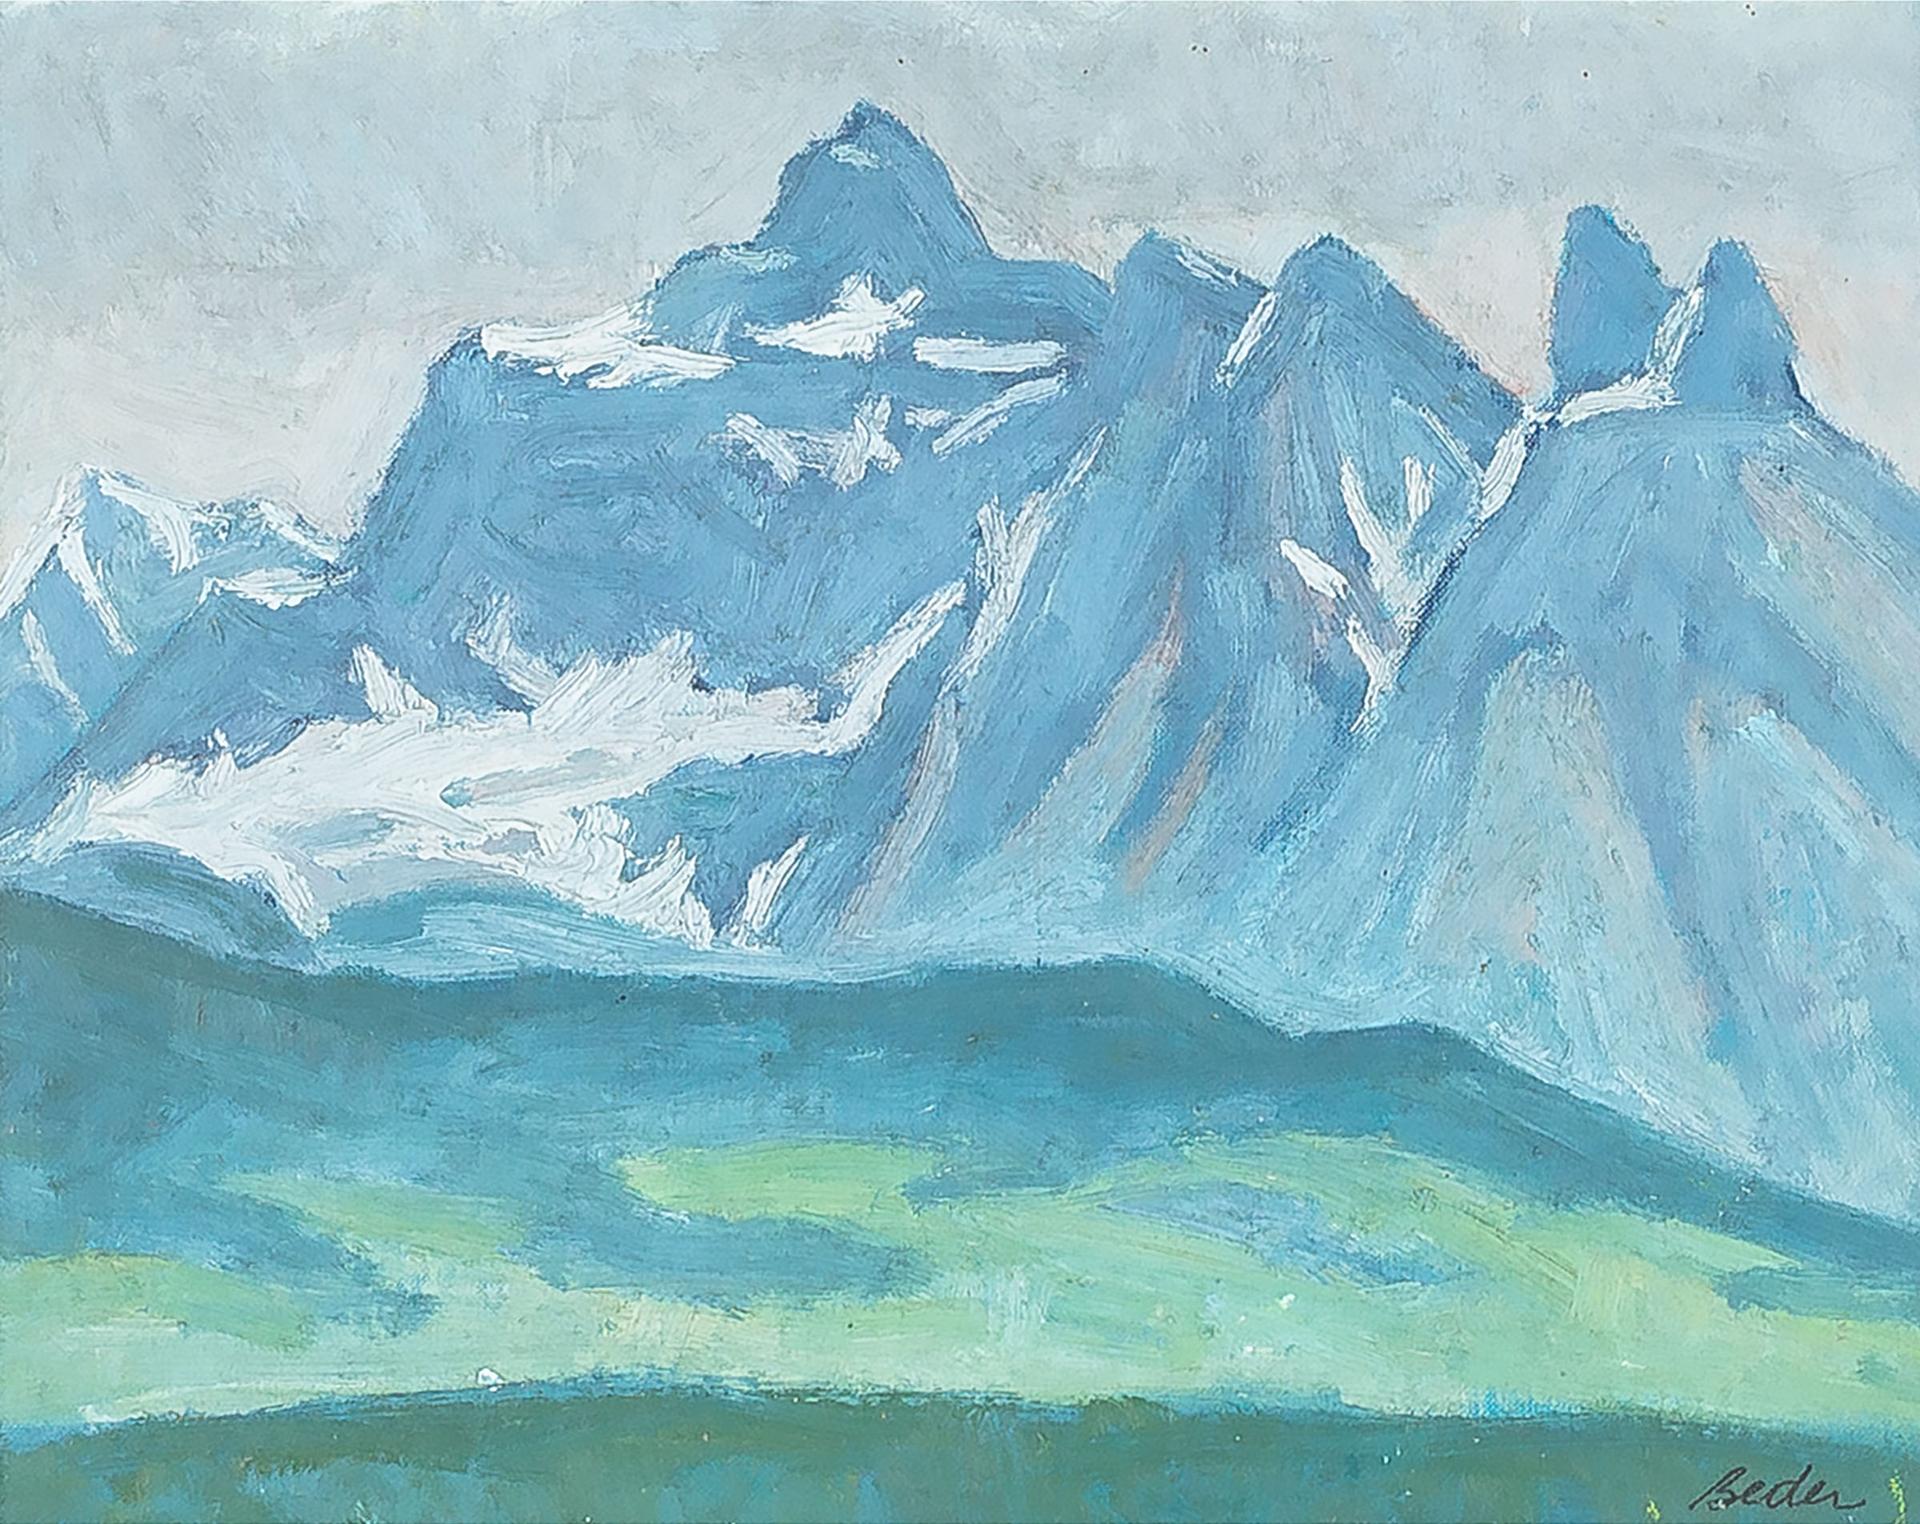 Jack Beder (1910-1987) - Peaks In The Haze (Jasper National Park), 1970